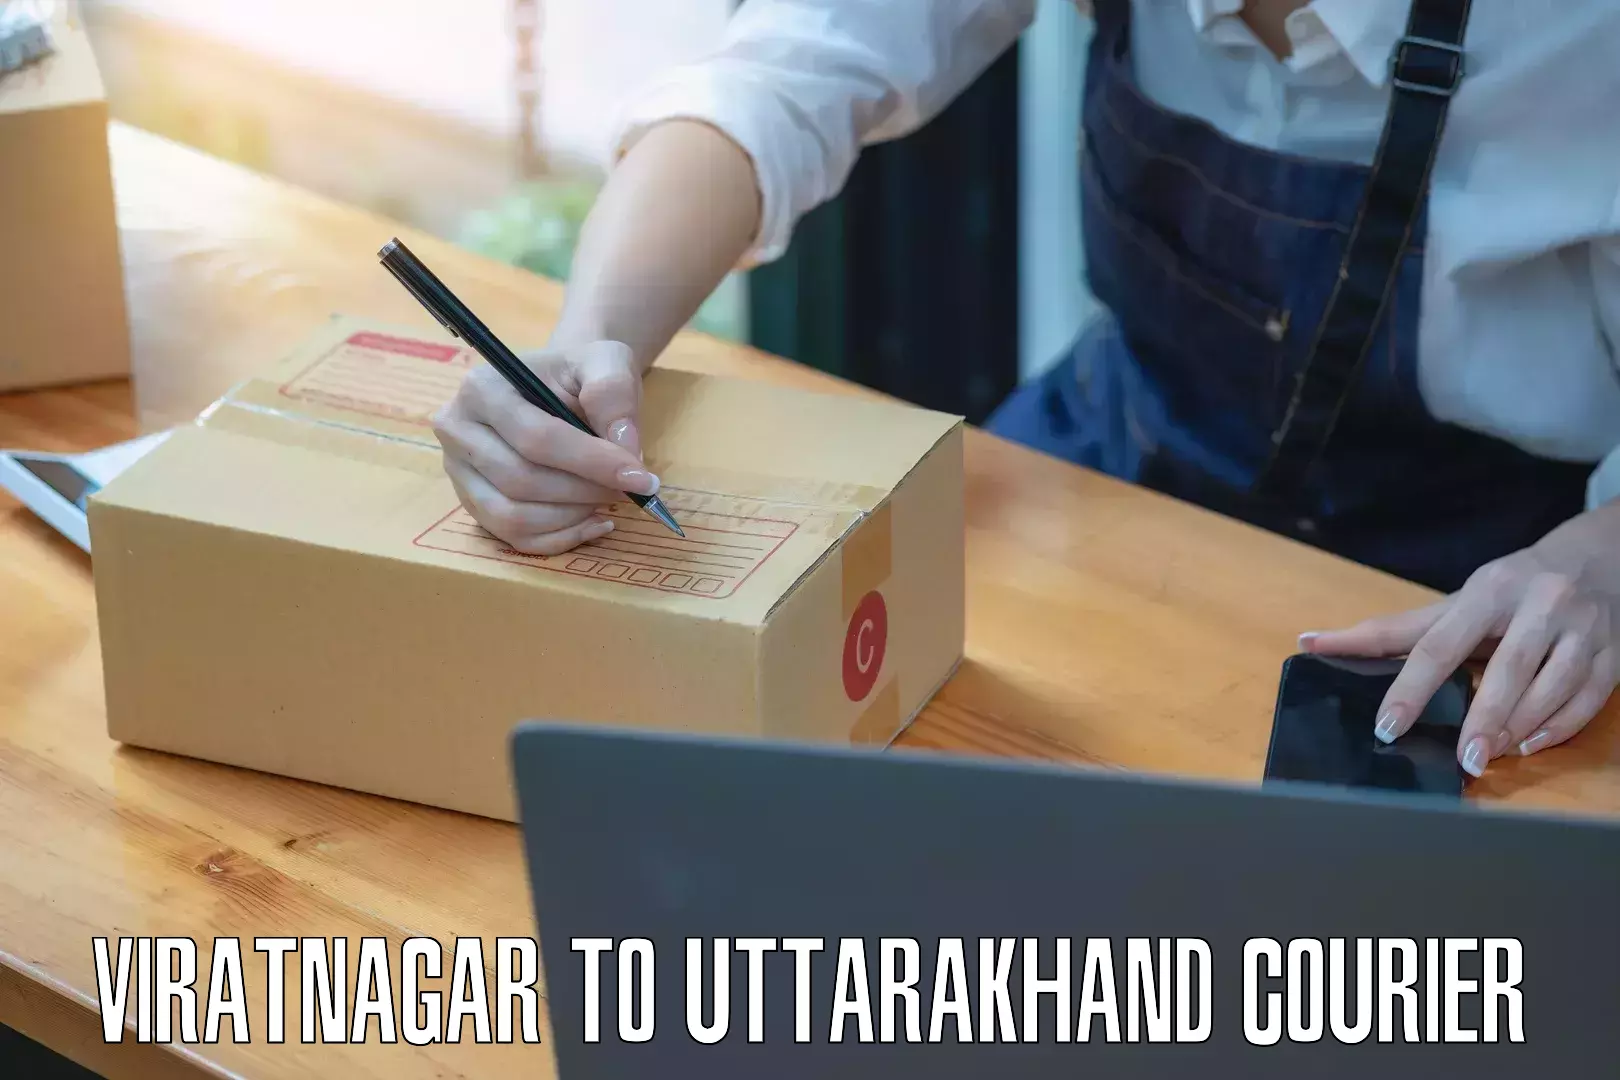 Sustainable delivery practices Viratnagar to Dehradun